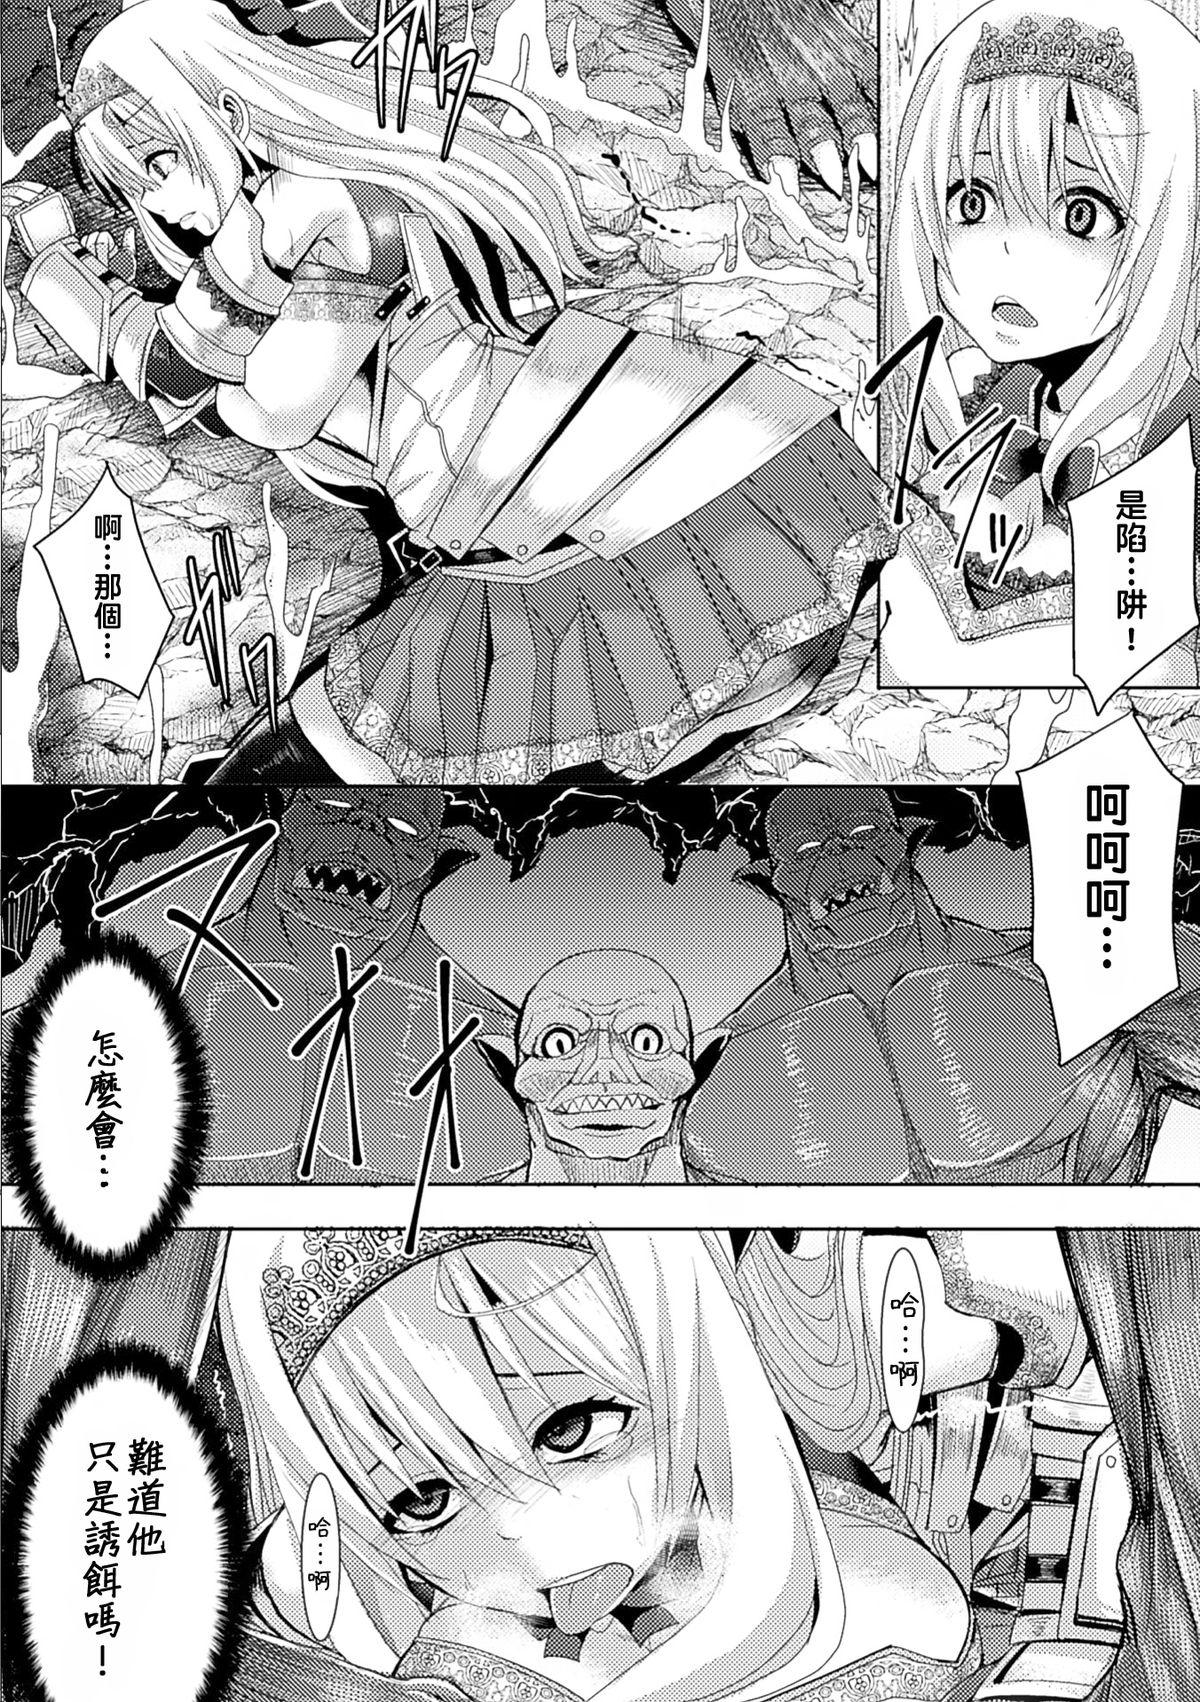 Himekishi no Batsu - Punishment of Princess Knight 3